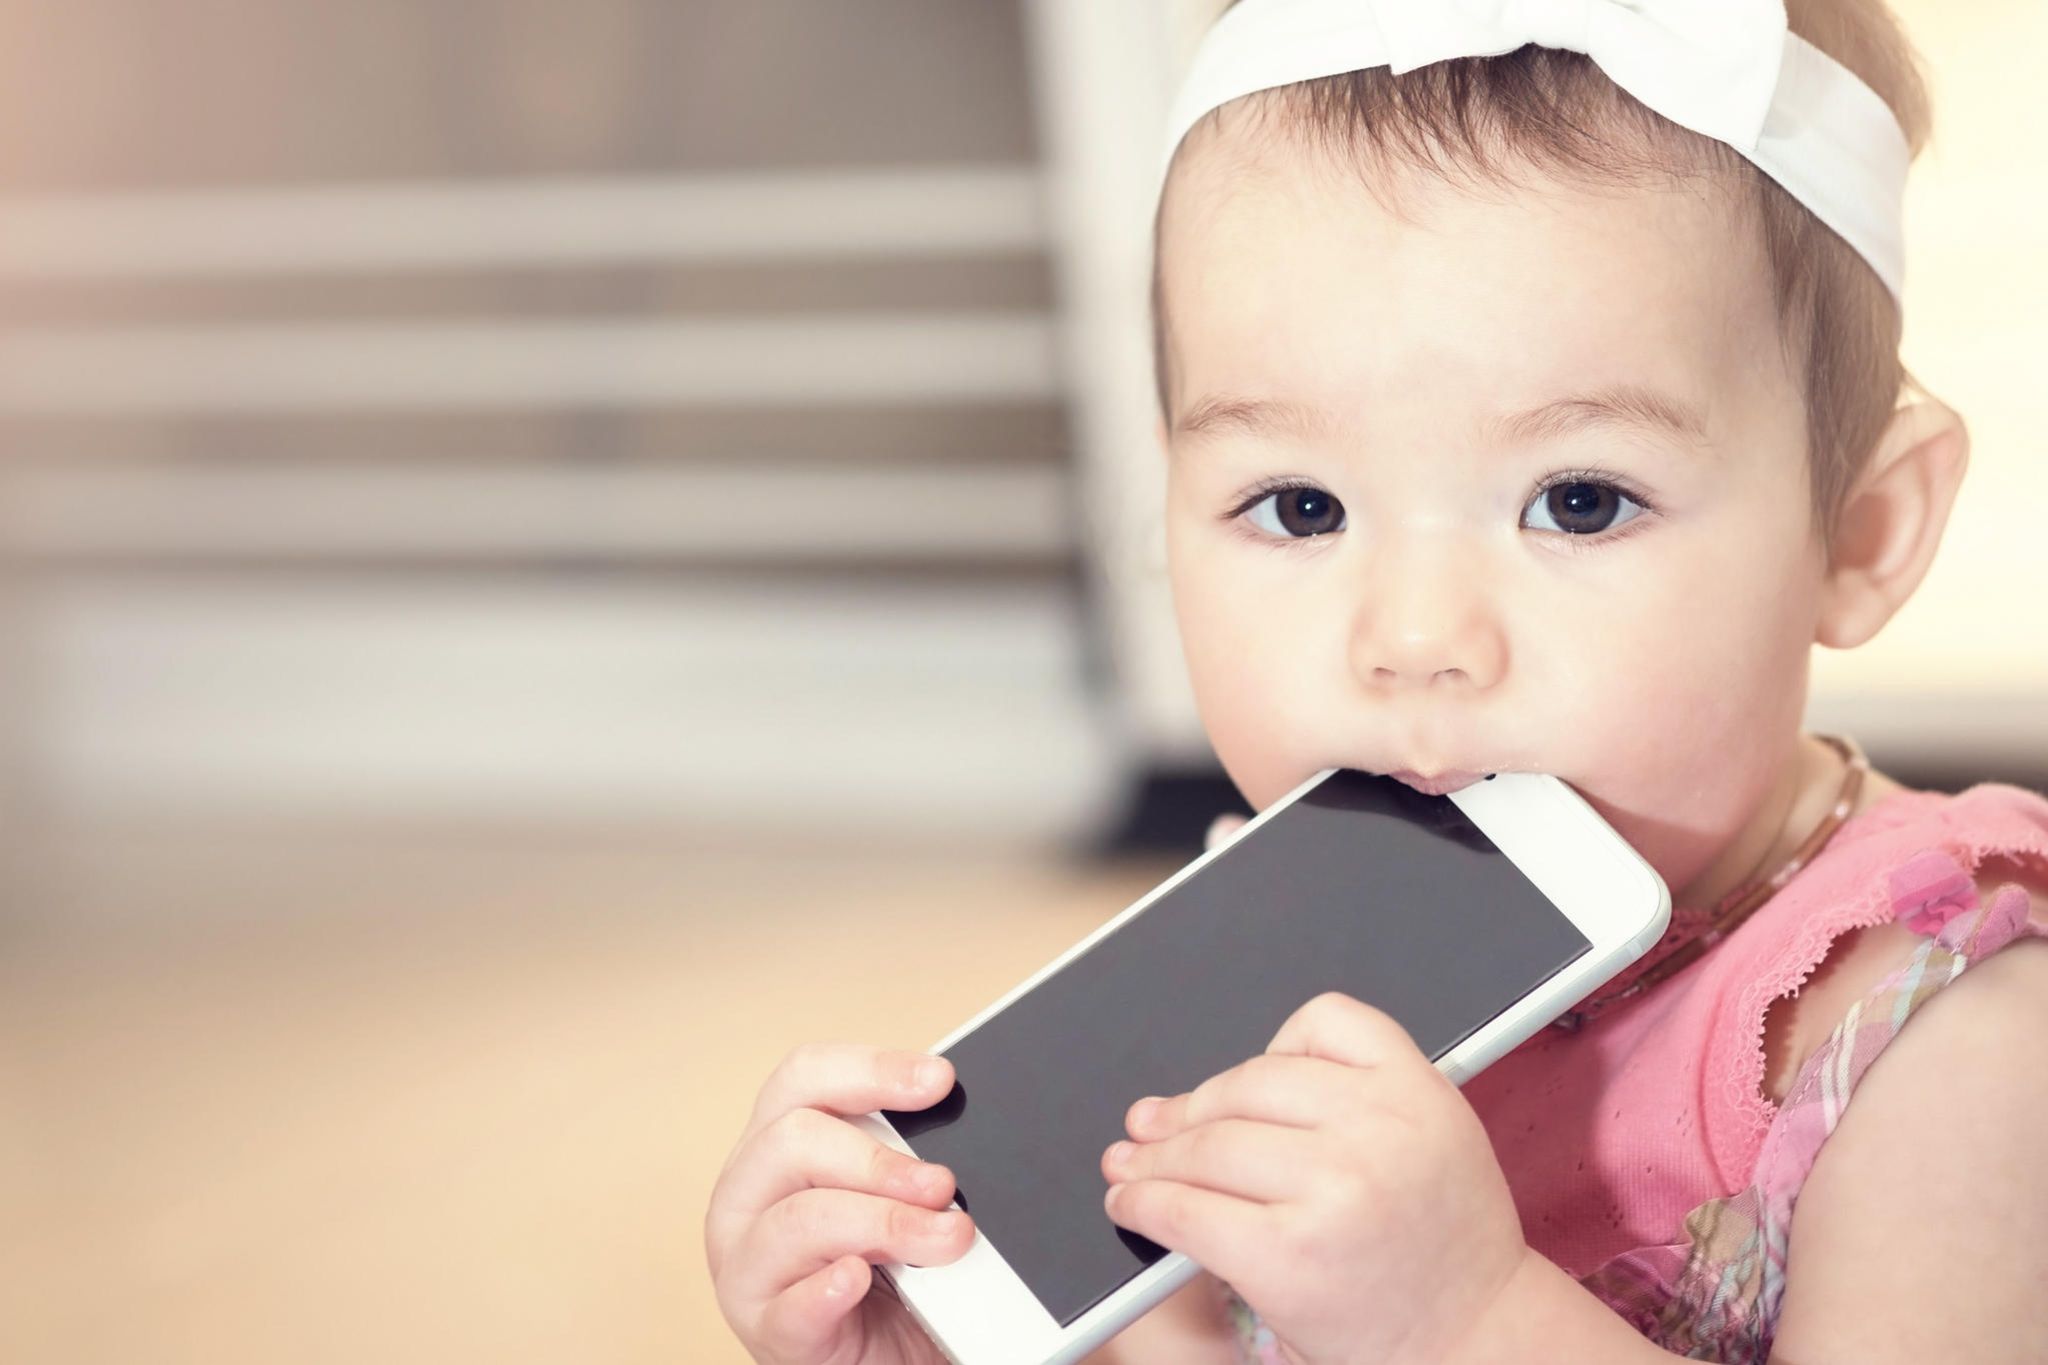 Strahlung: Wie gefährlich sind Handys für Kinder?